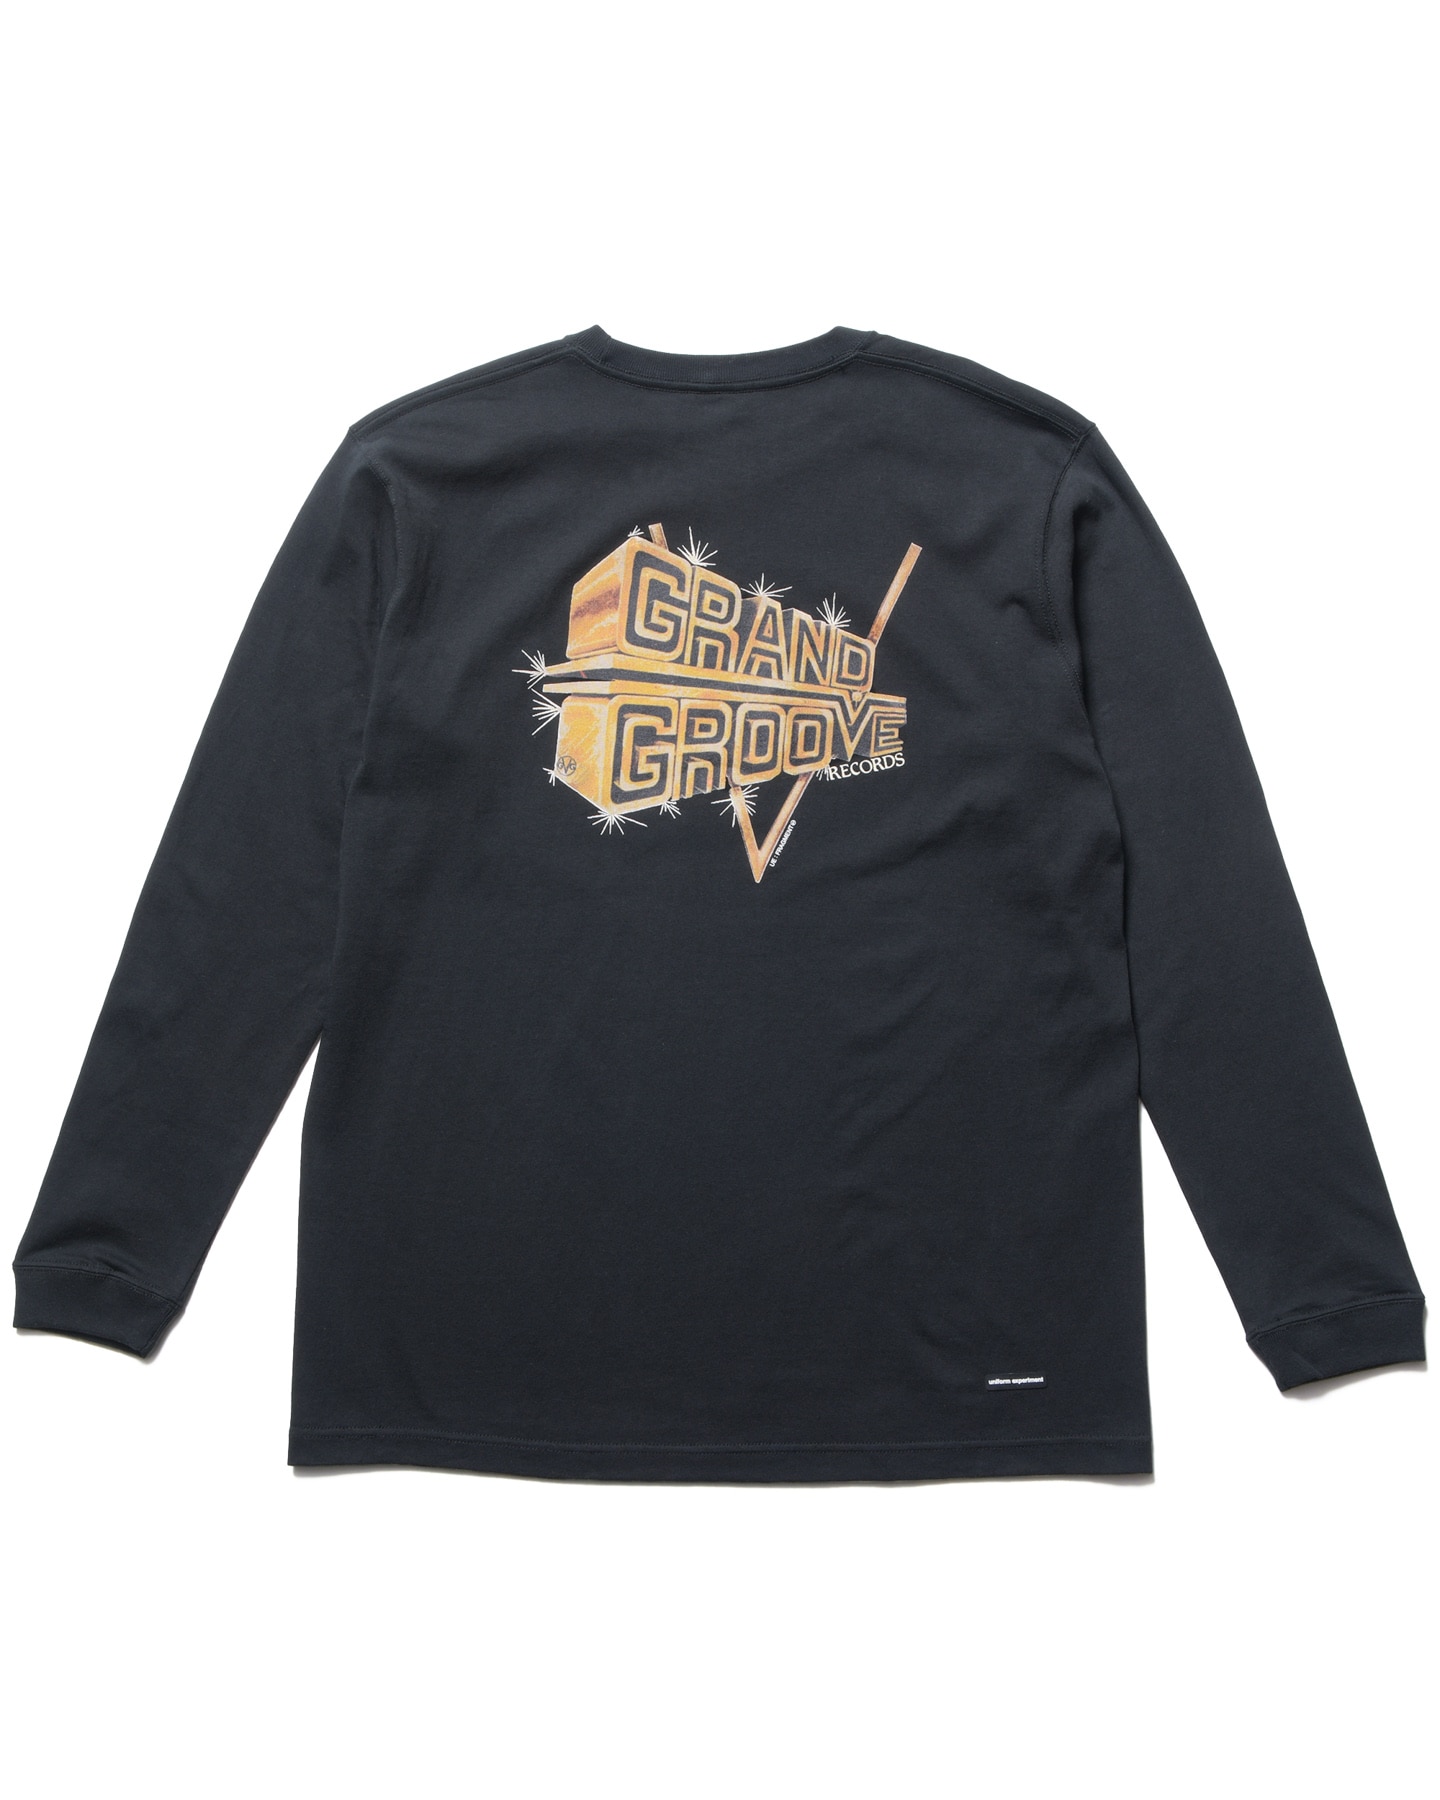 ロンTSOPH FRAGMENT GRAND GROOVE ロンT - Tシャツ/カットソー(七分/長袖)